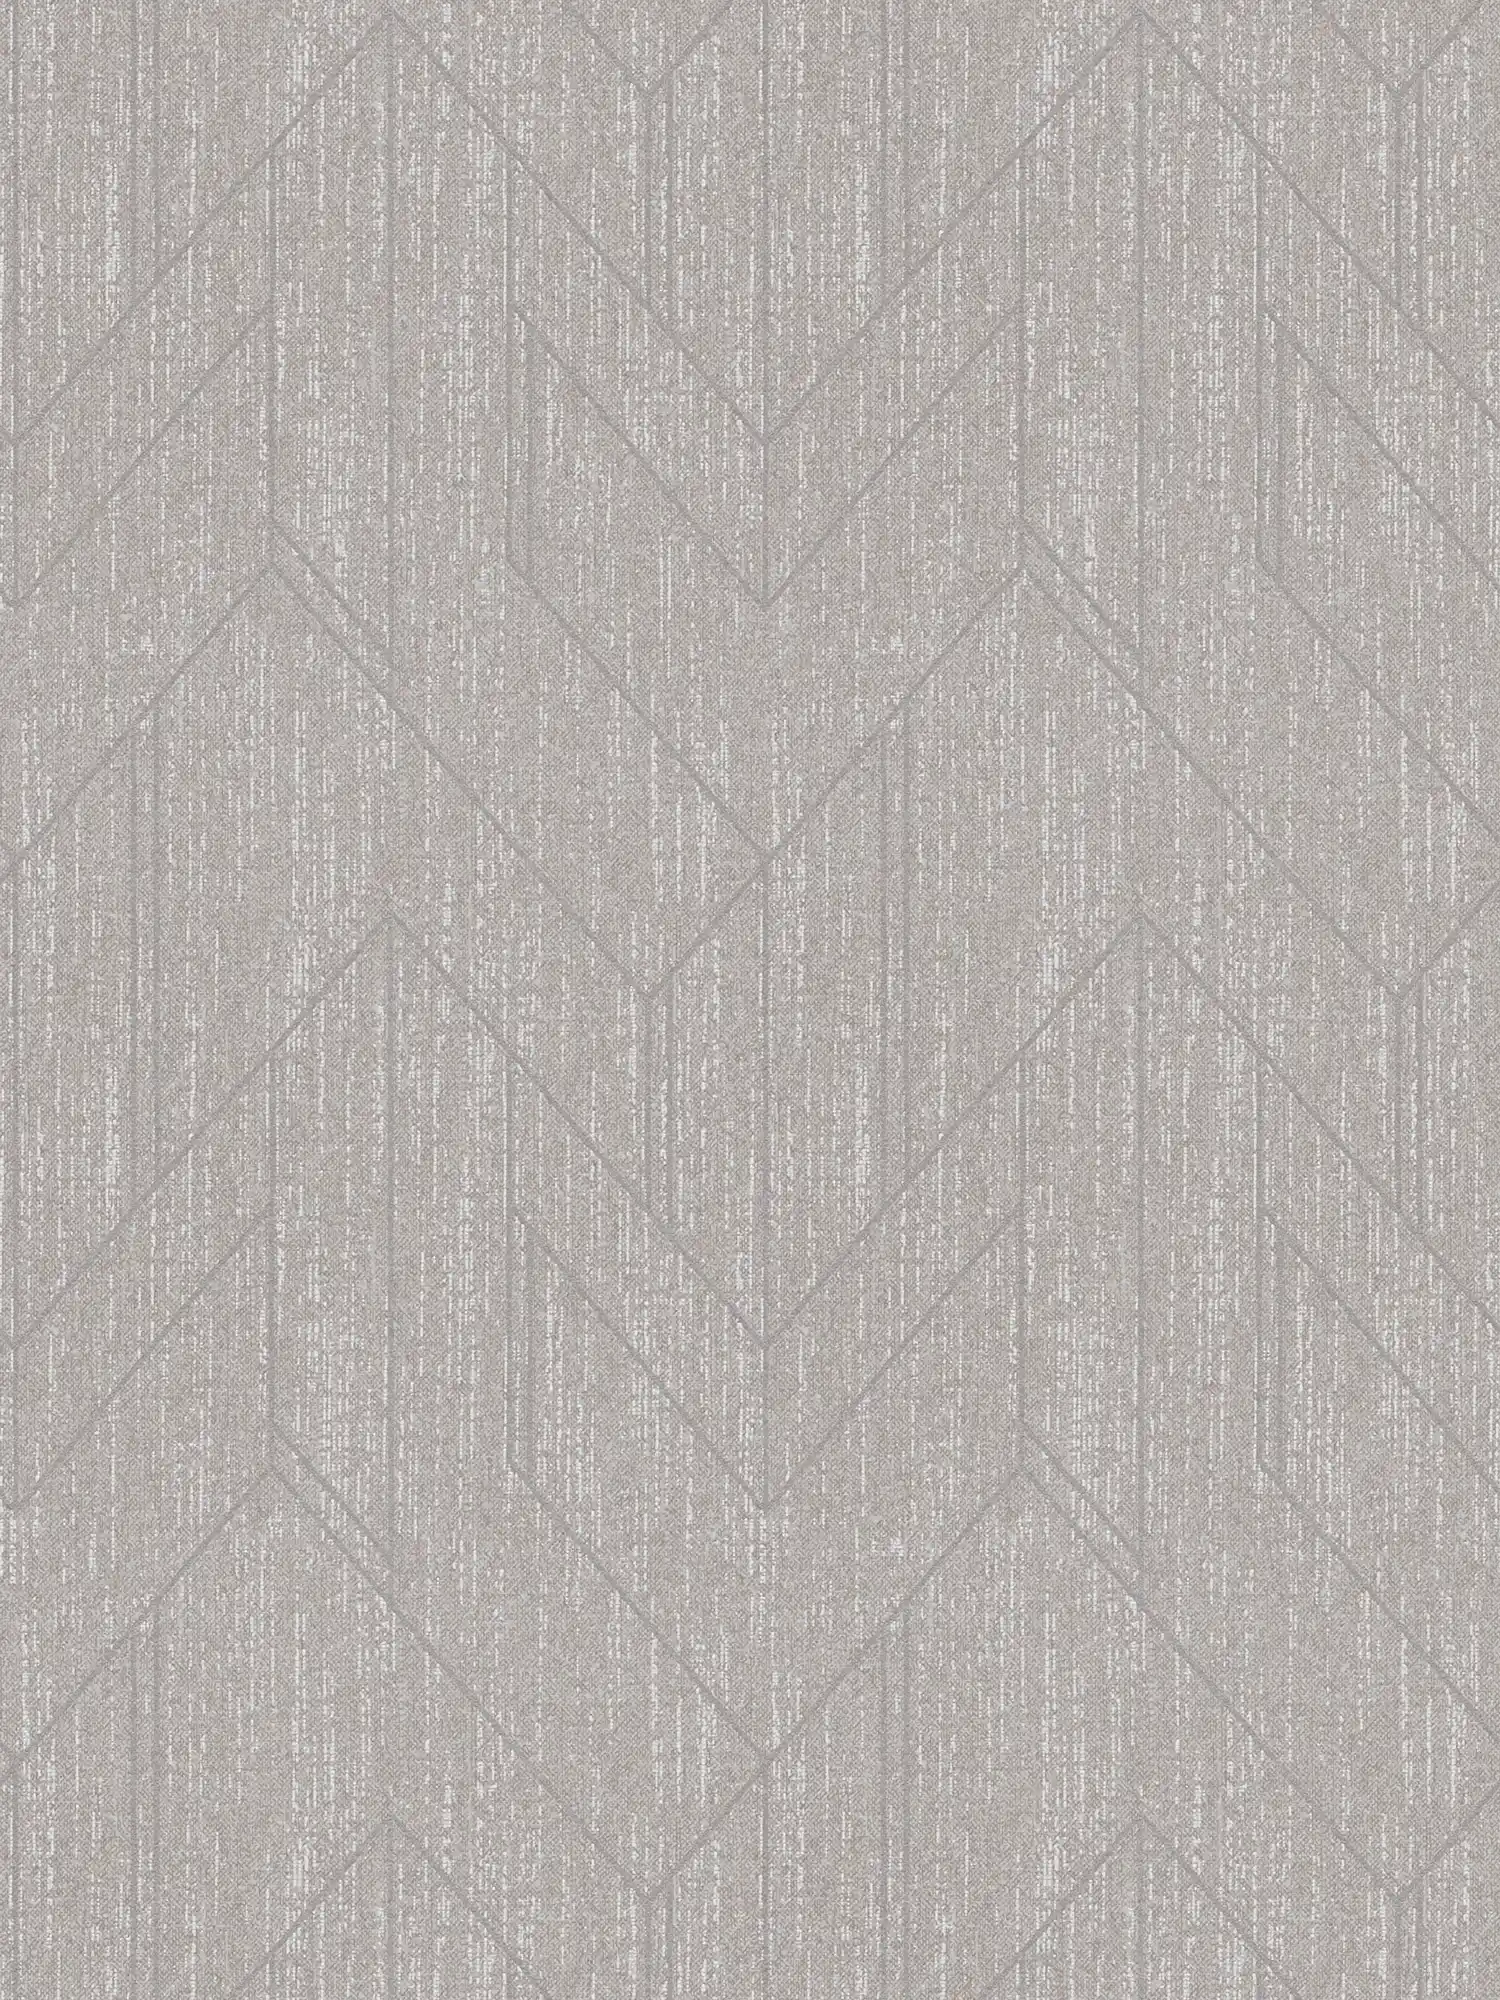 Textiel-look behang met structuur design & zilver patroon - grijs
